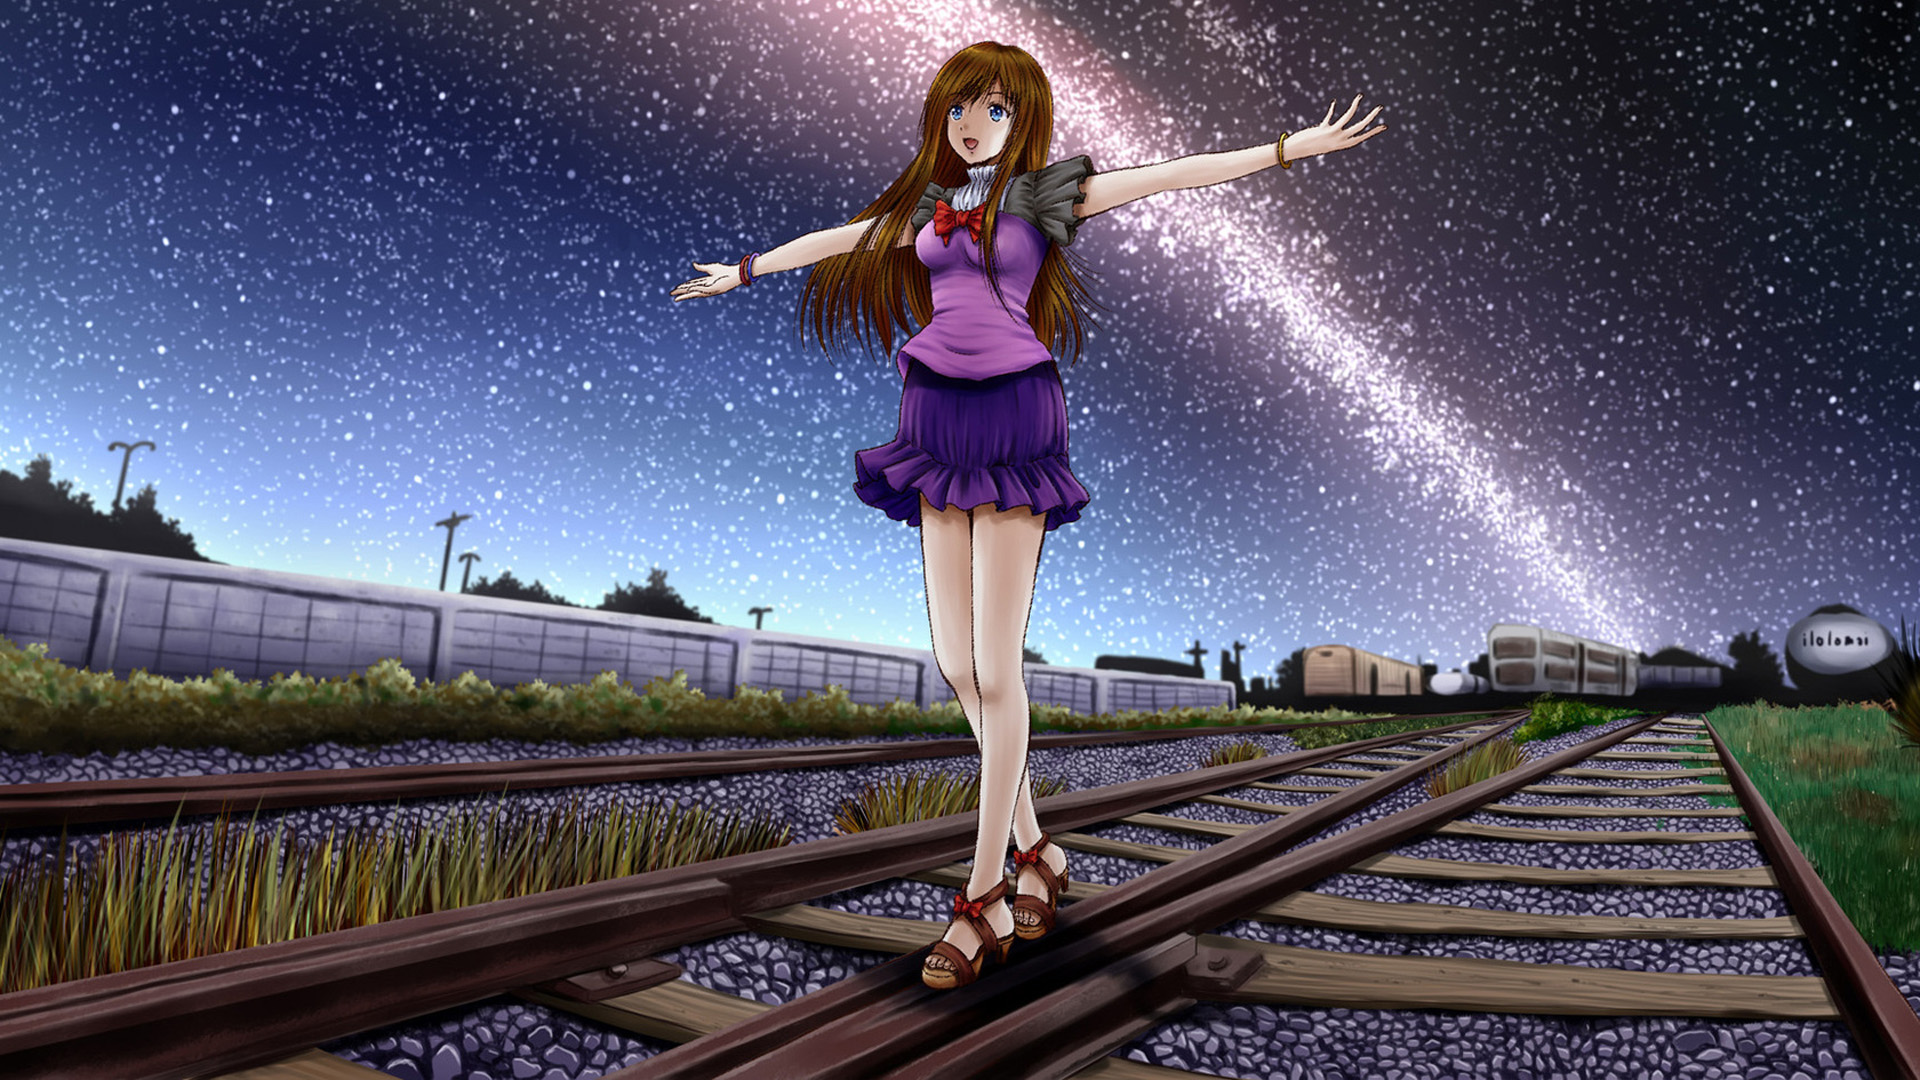 女孩 铁路 风景 主题动漫桌面壁纸 彼岸壁纸手机版